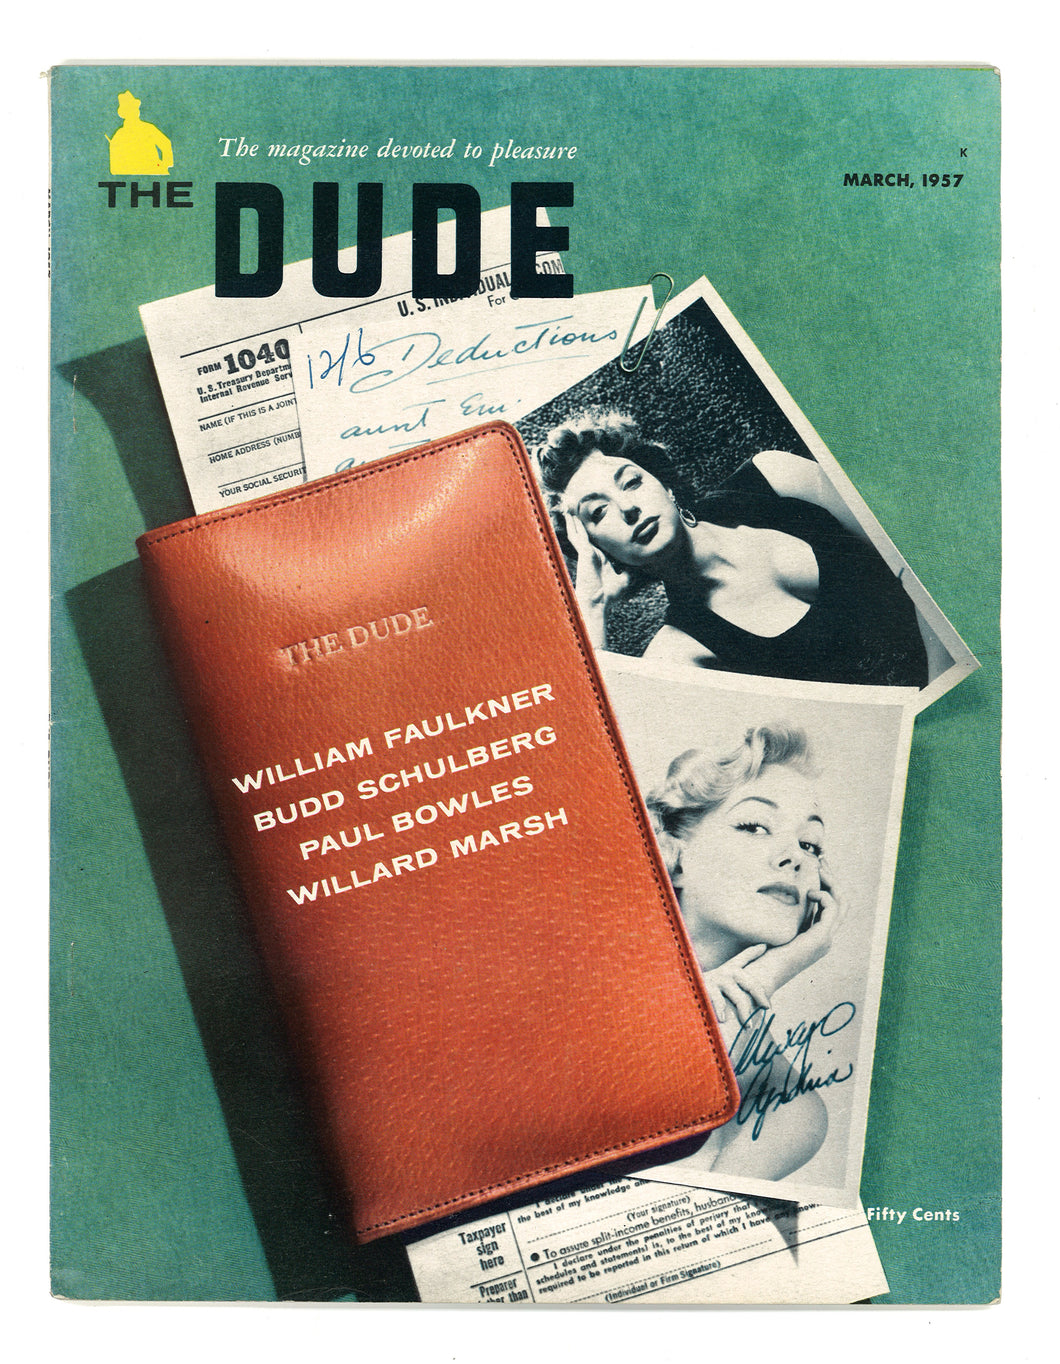 Dude Vol 1 No 4 March 1957